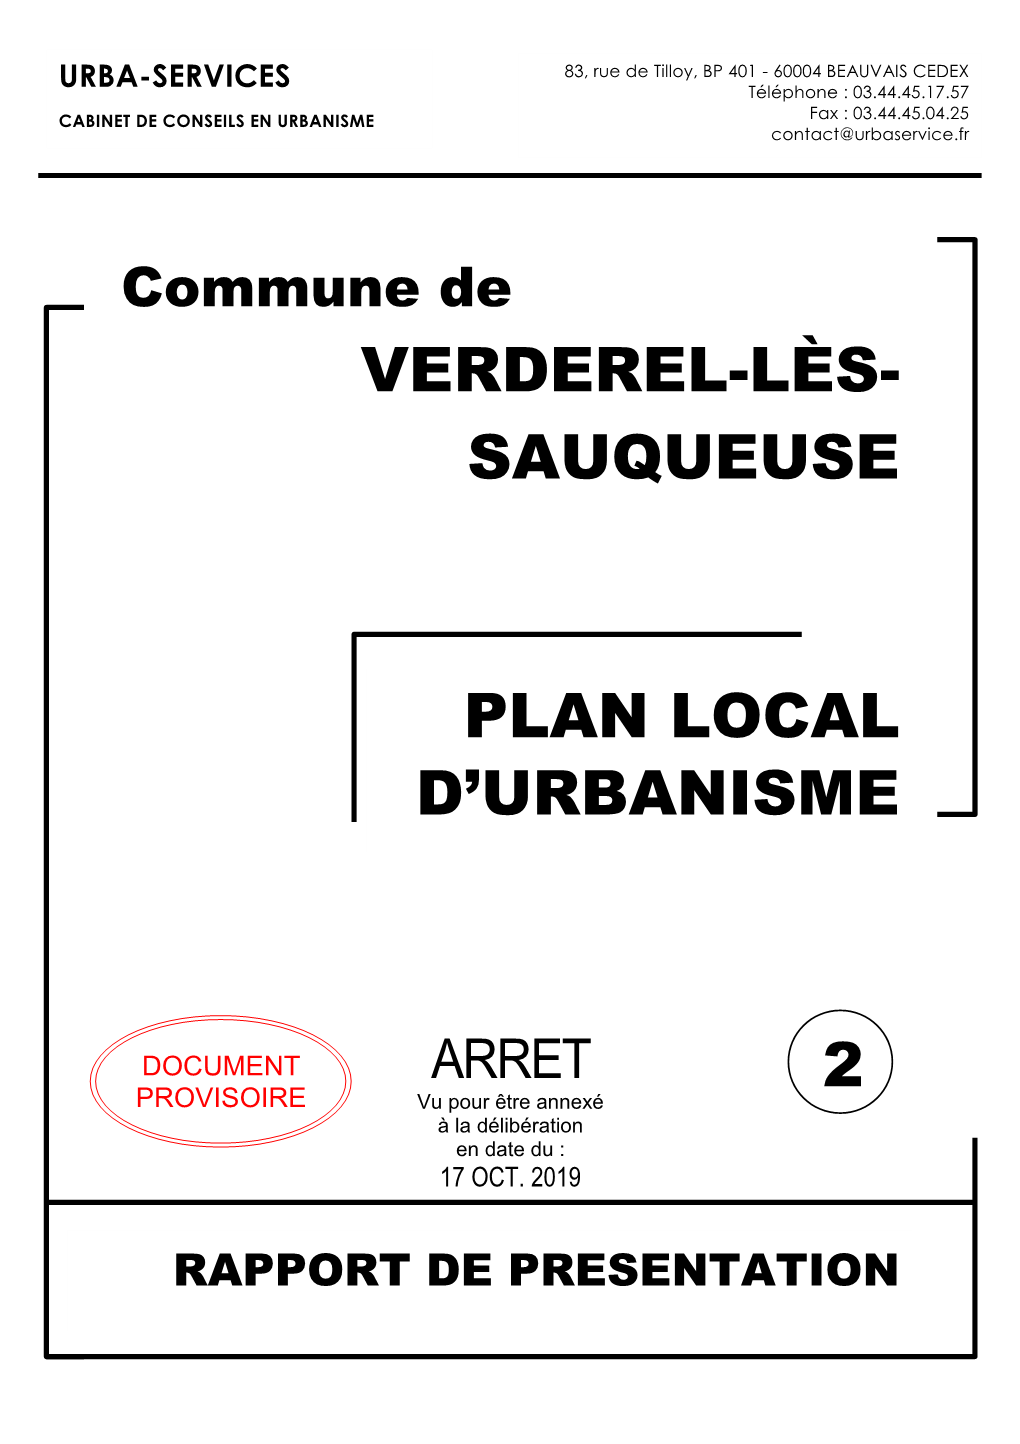 Plan Local D'urbanisme Verderel-Lès- Sauqueuse 2